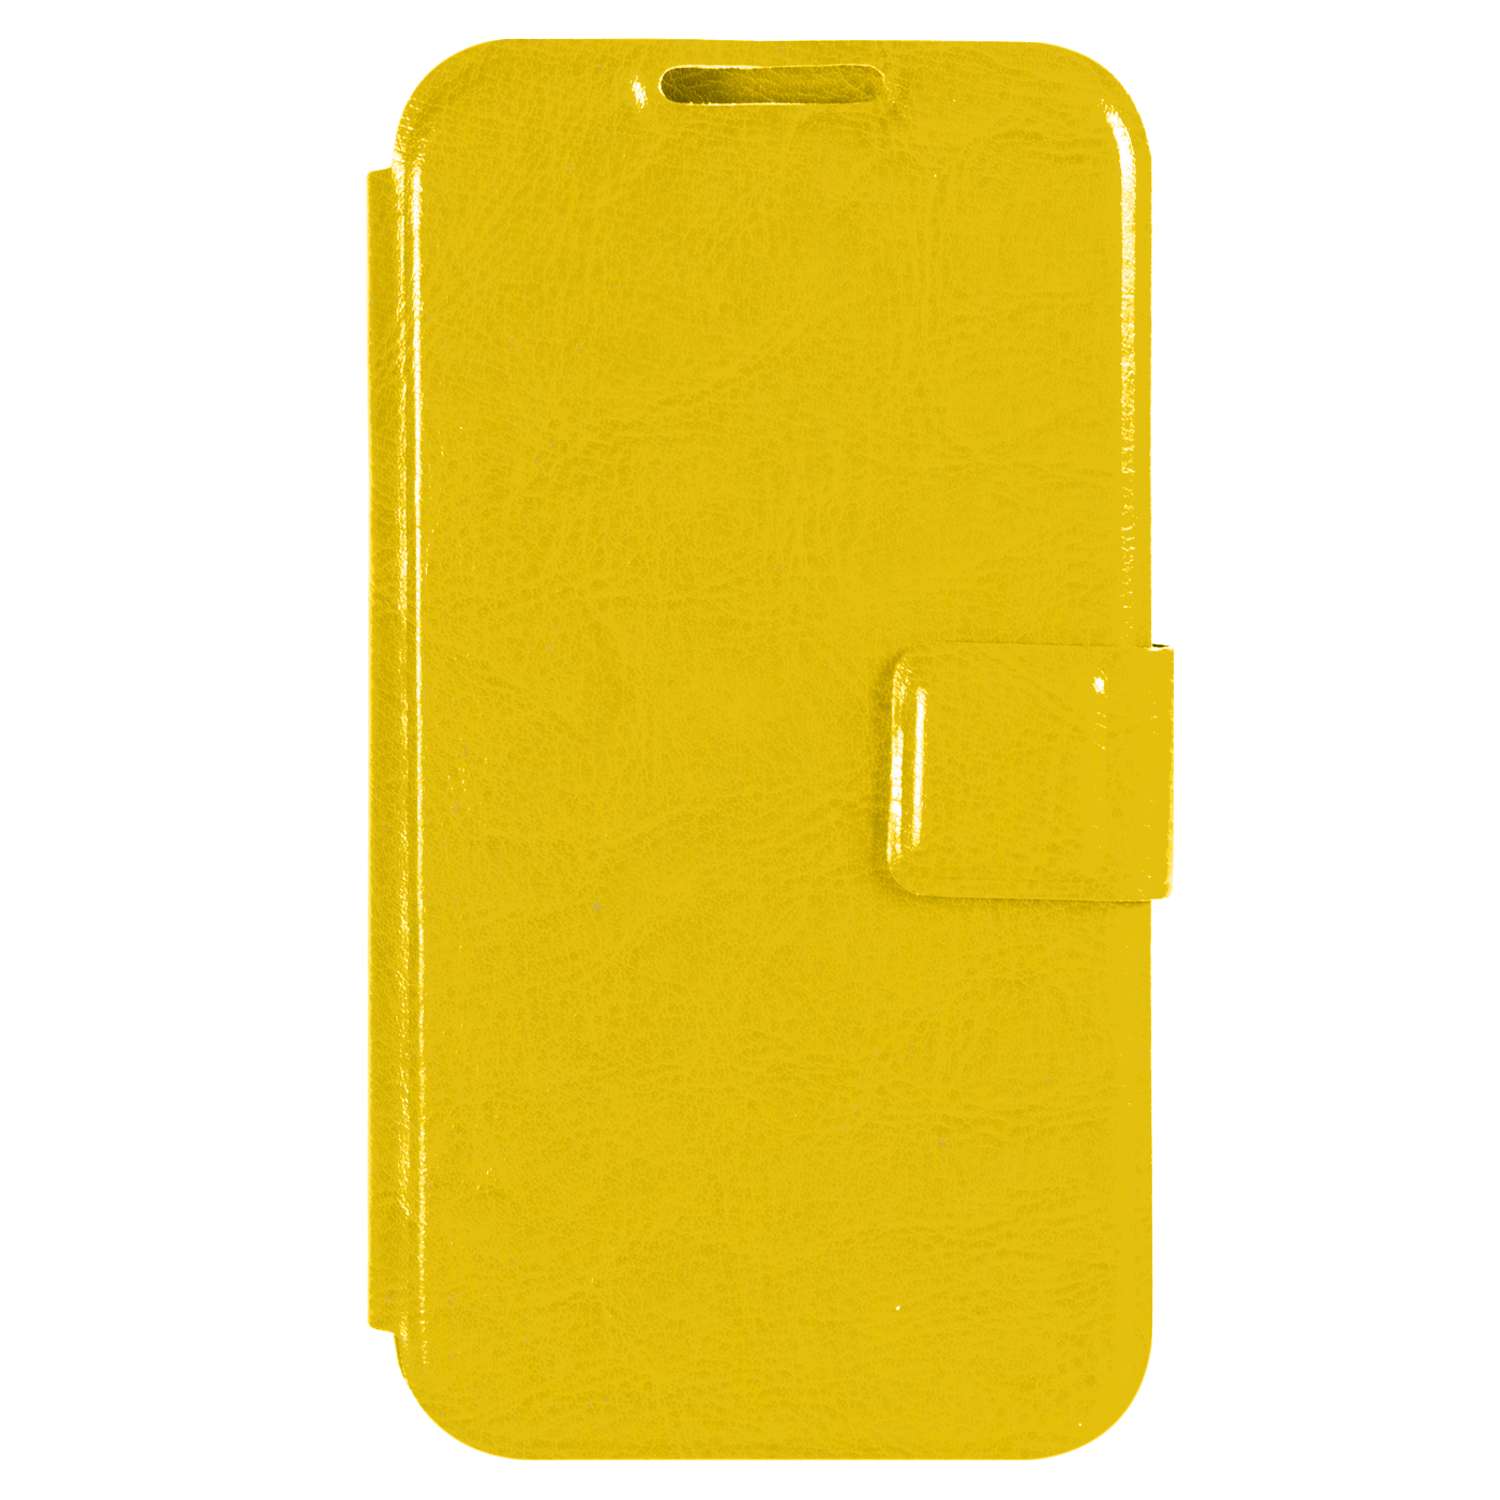 Чехол универсальный iBox Universal для телефонов 4.2-5 дюйма желтый - фото 3